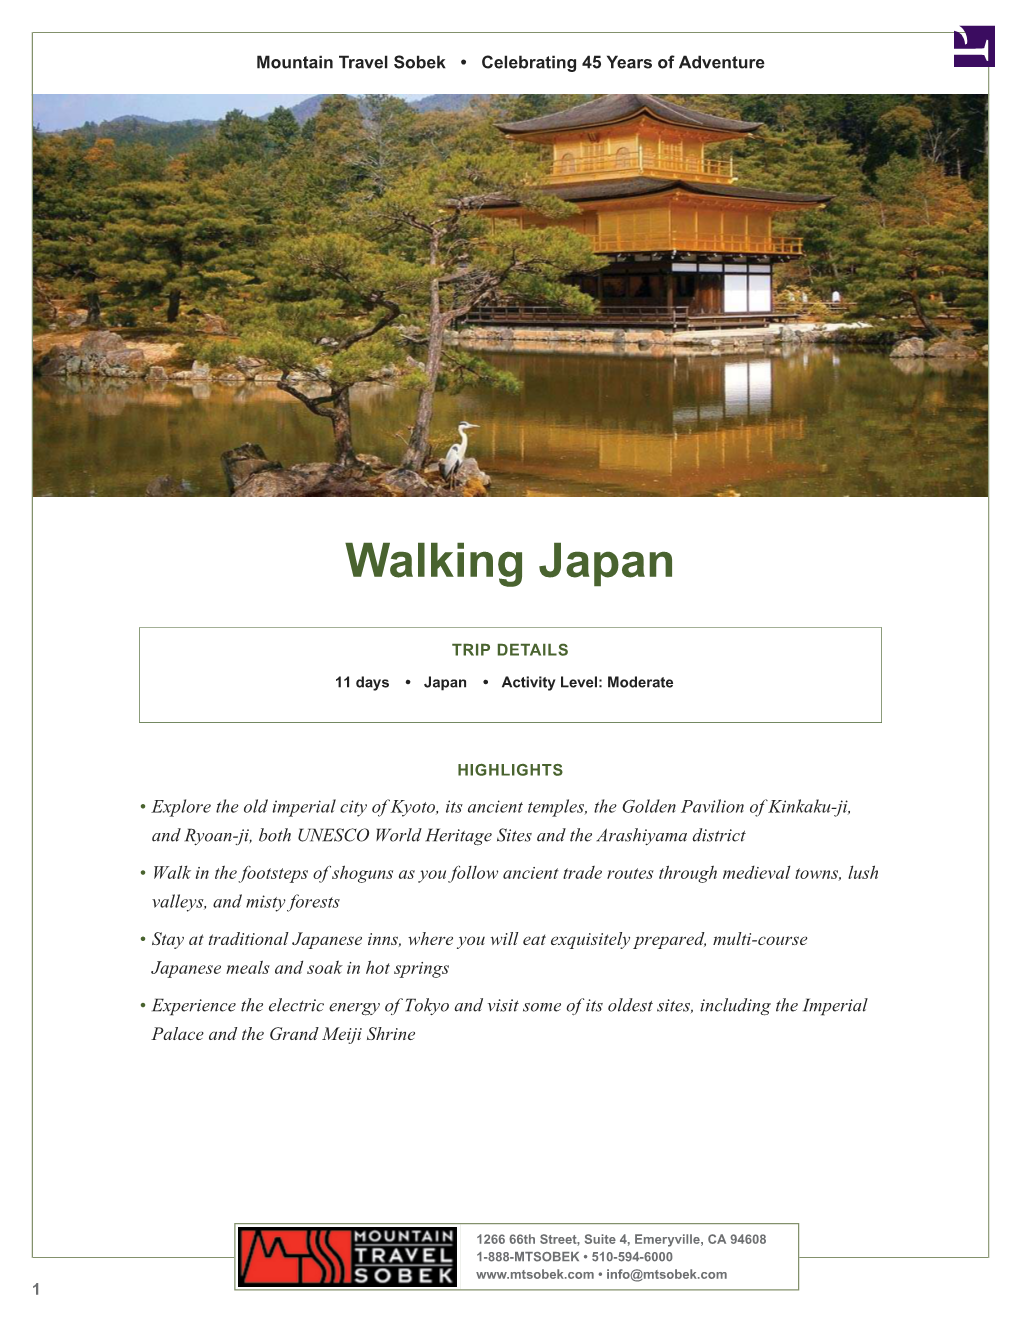 Walking Japan